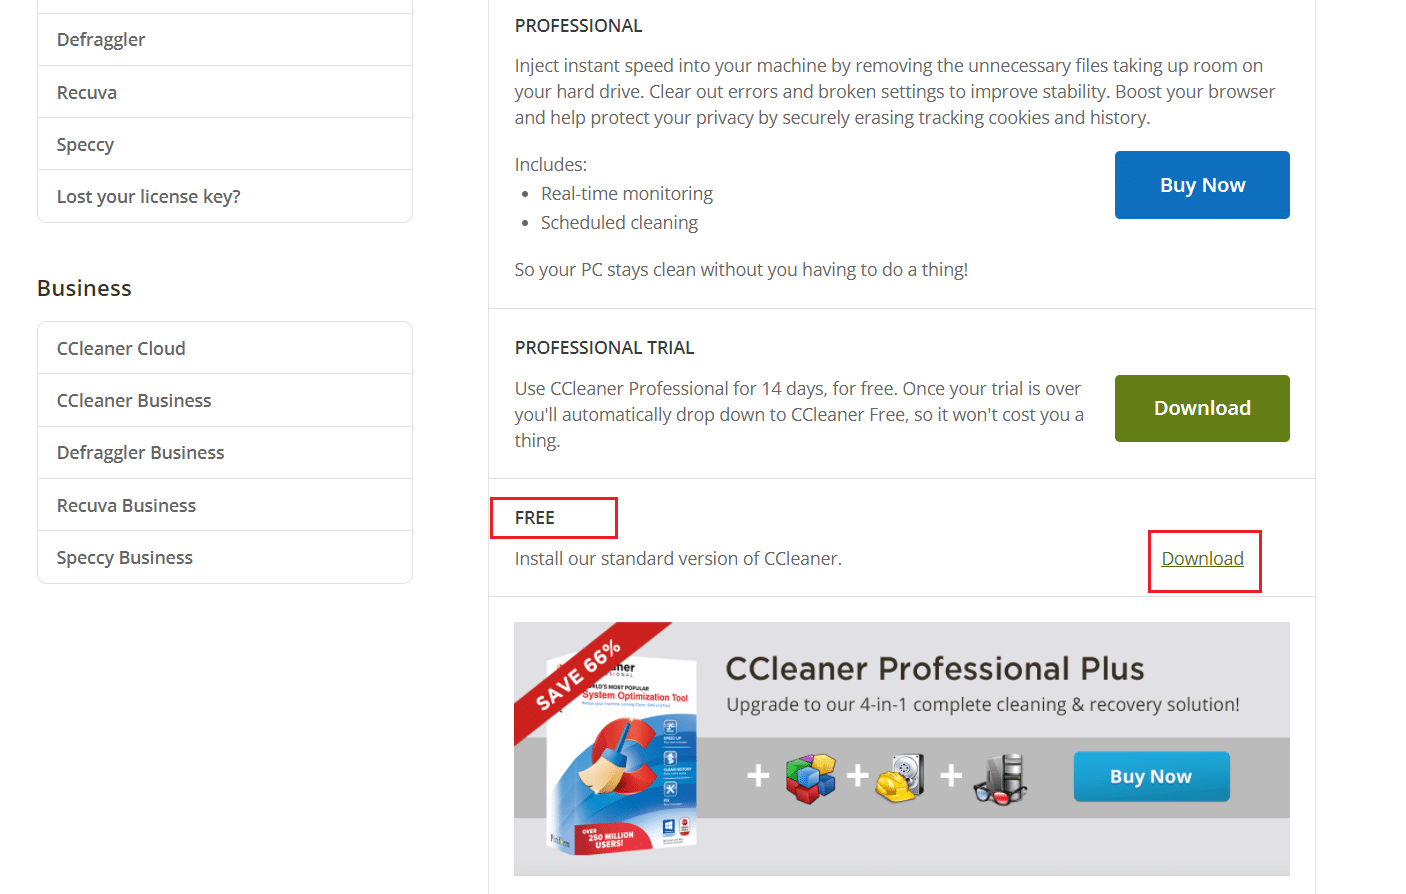 прокрутите вниз, чтобы найти бесплатную опцию, и нажмите «Загрузить», чтобы загрузить CCleaner.